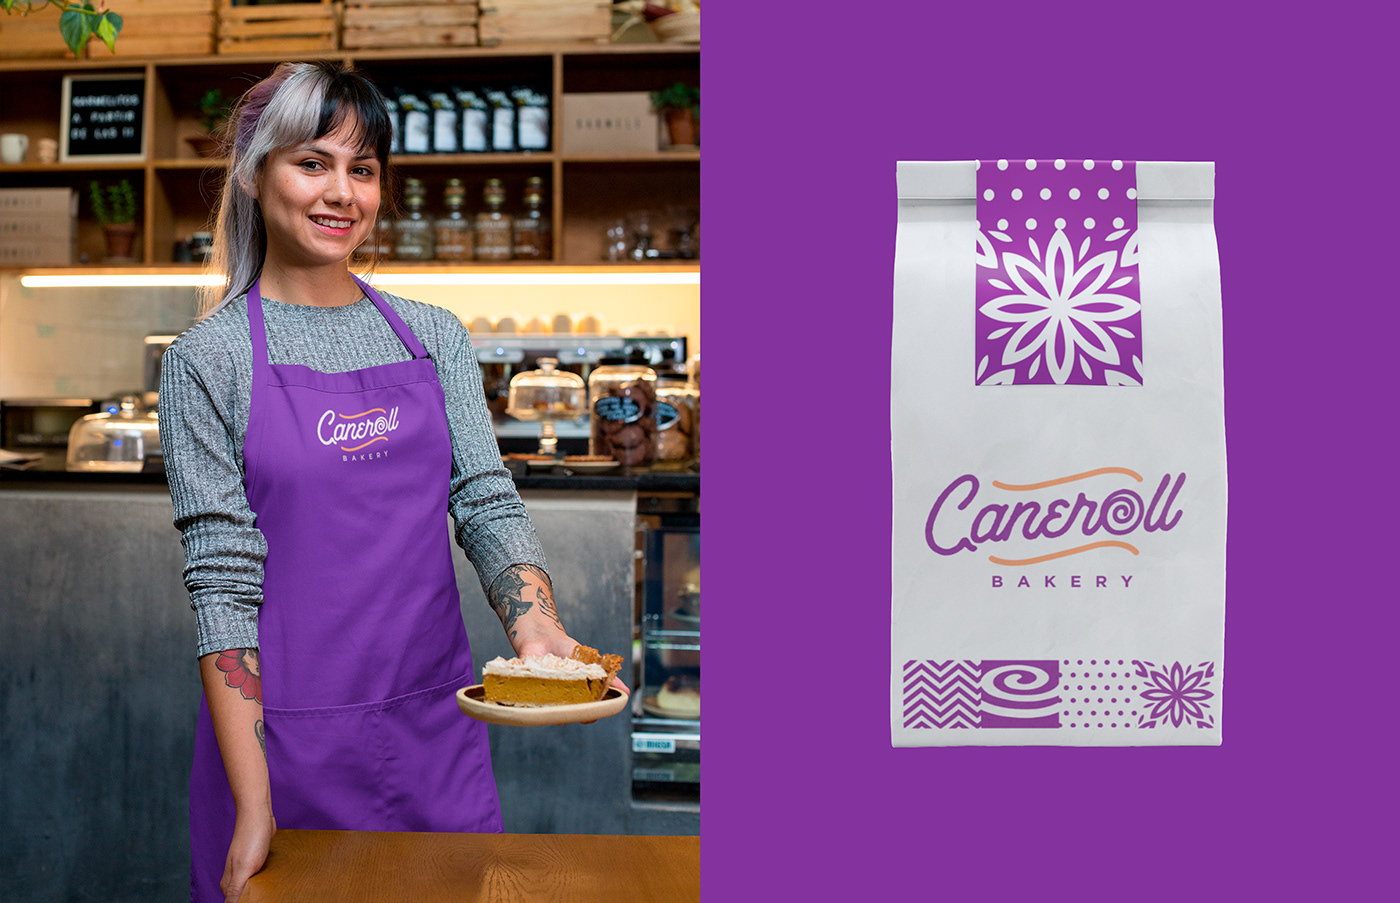 bakery branding  brandingdesign cinnamon rolls design logo Logo Design Logotype Packaging reposteria